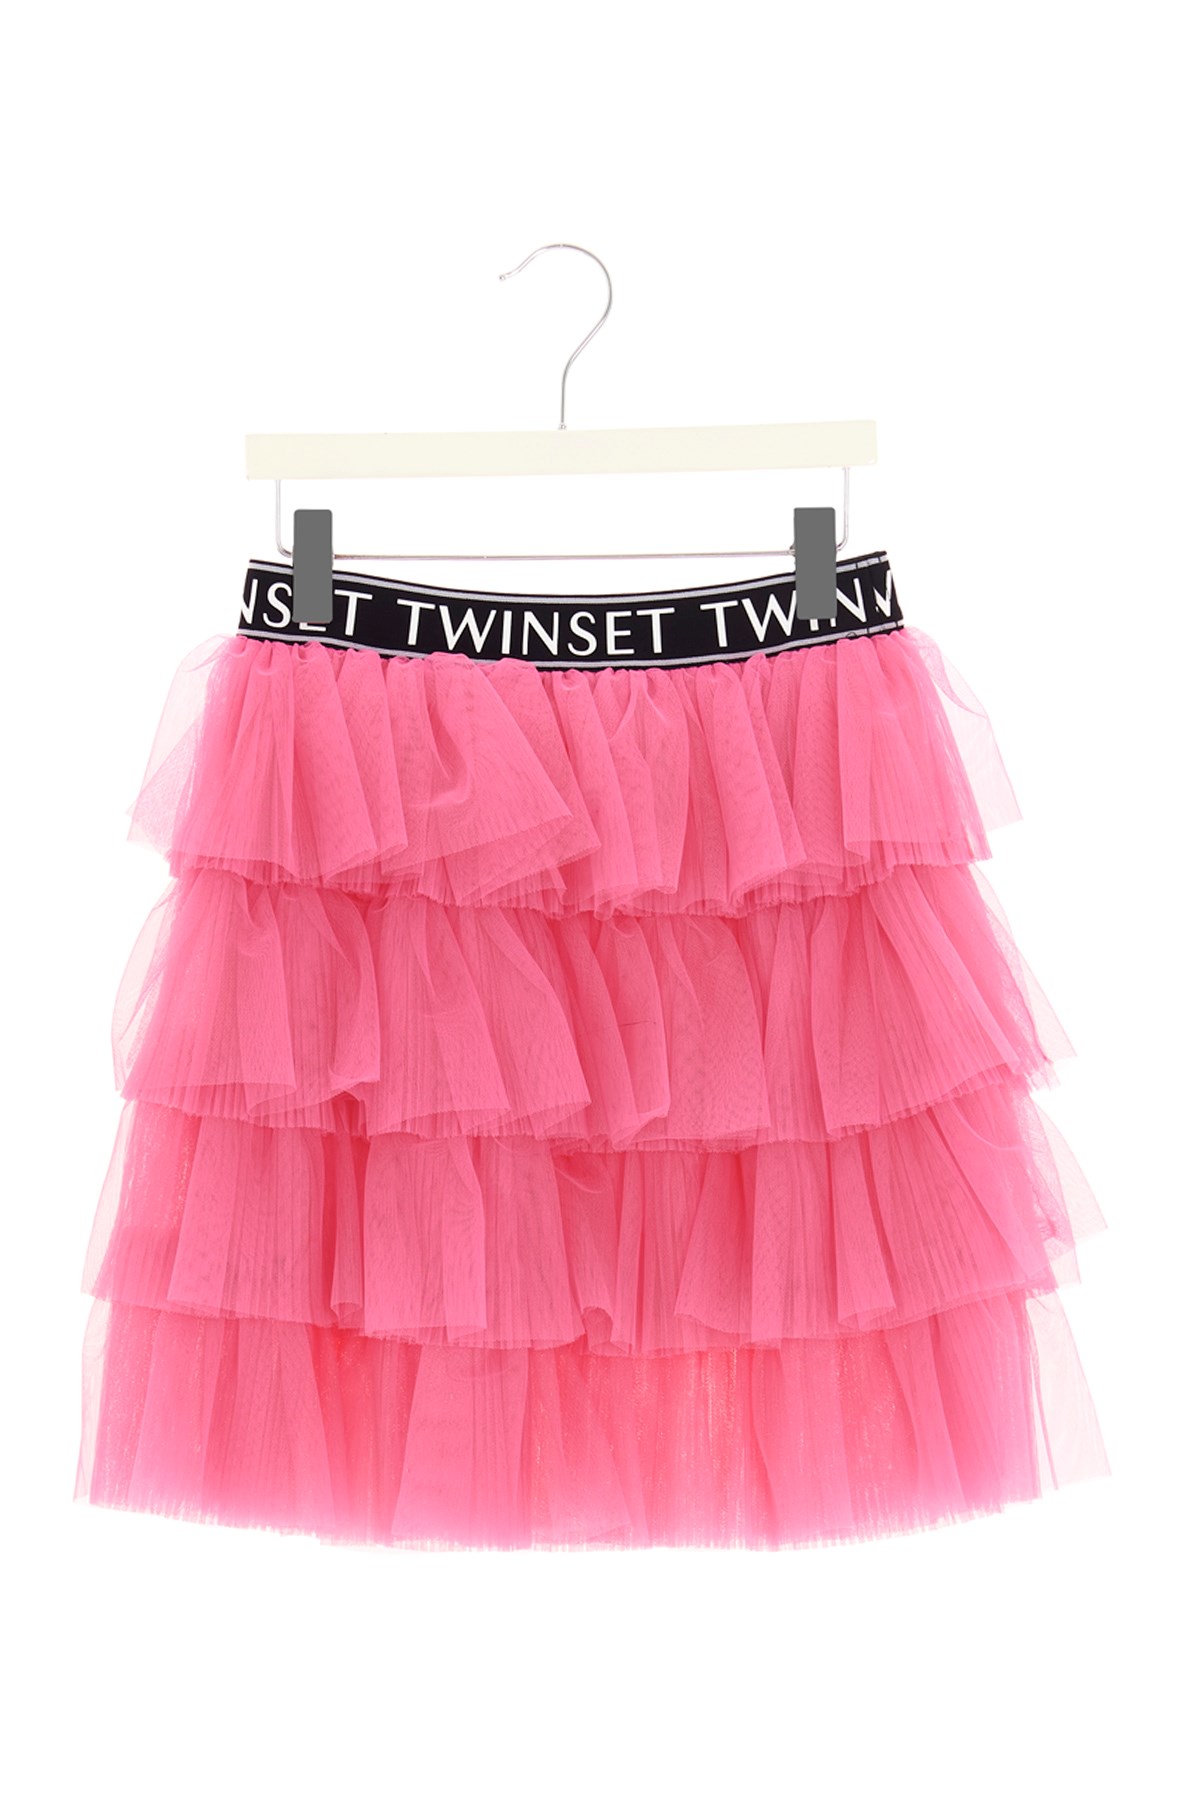 TWIN SET Tulle Skirt